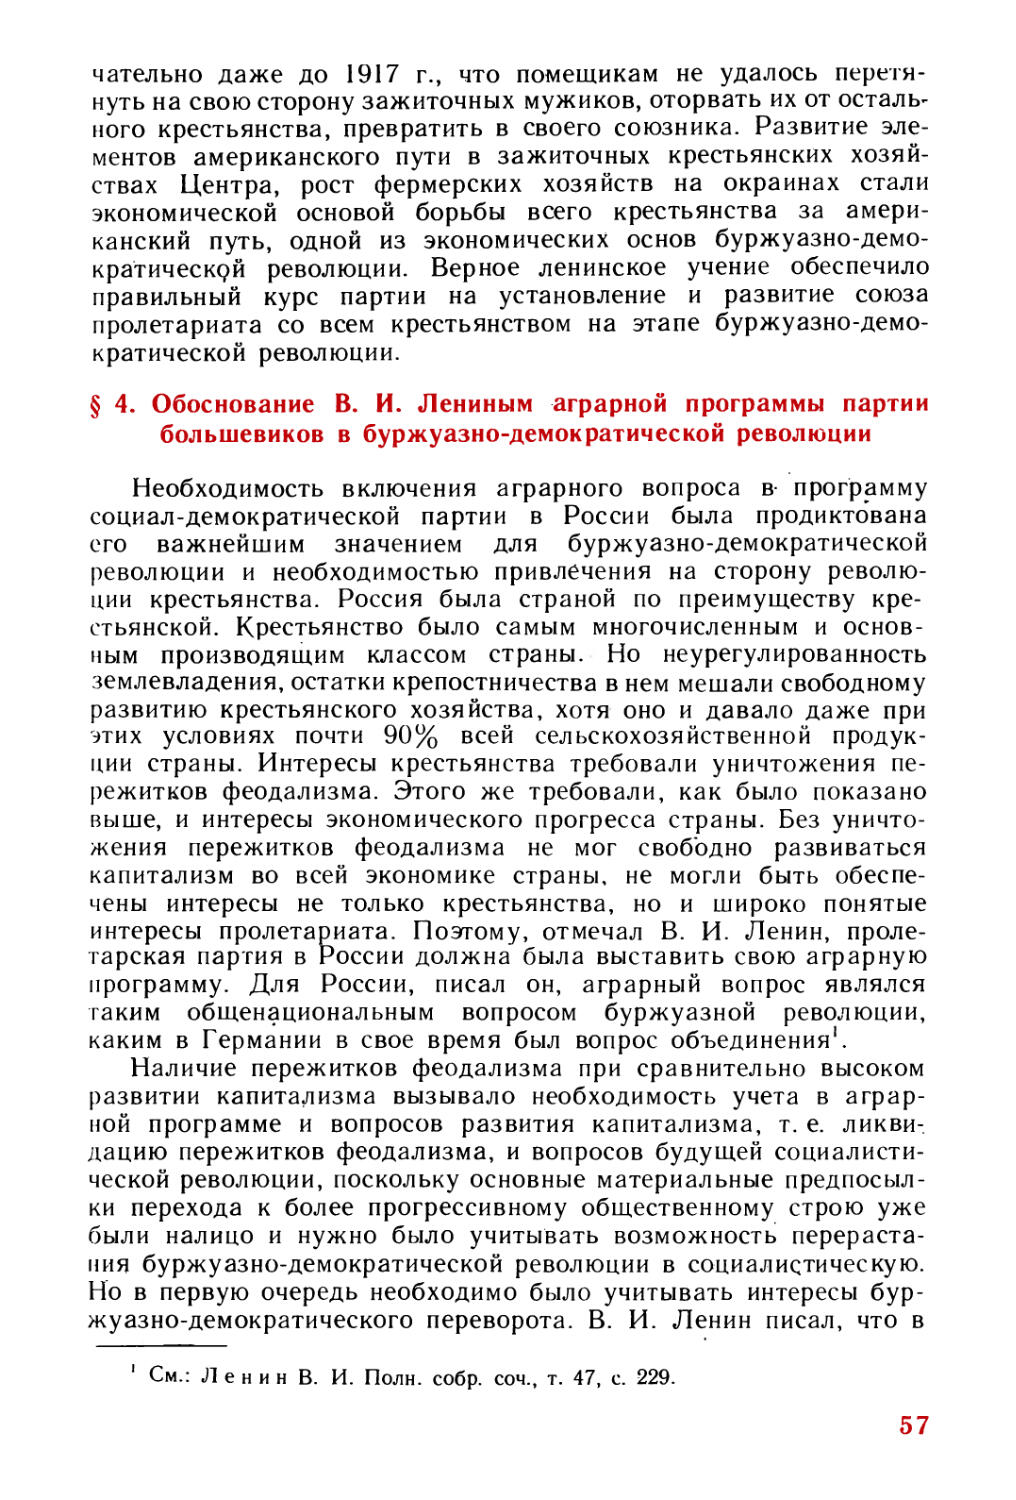 § 4. Обоснование В. И. Лениным аграрной программы партии большевиков в буржуазно-демократической революции